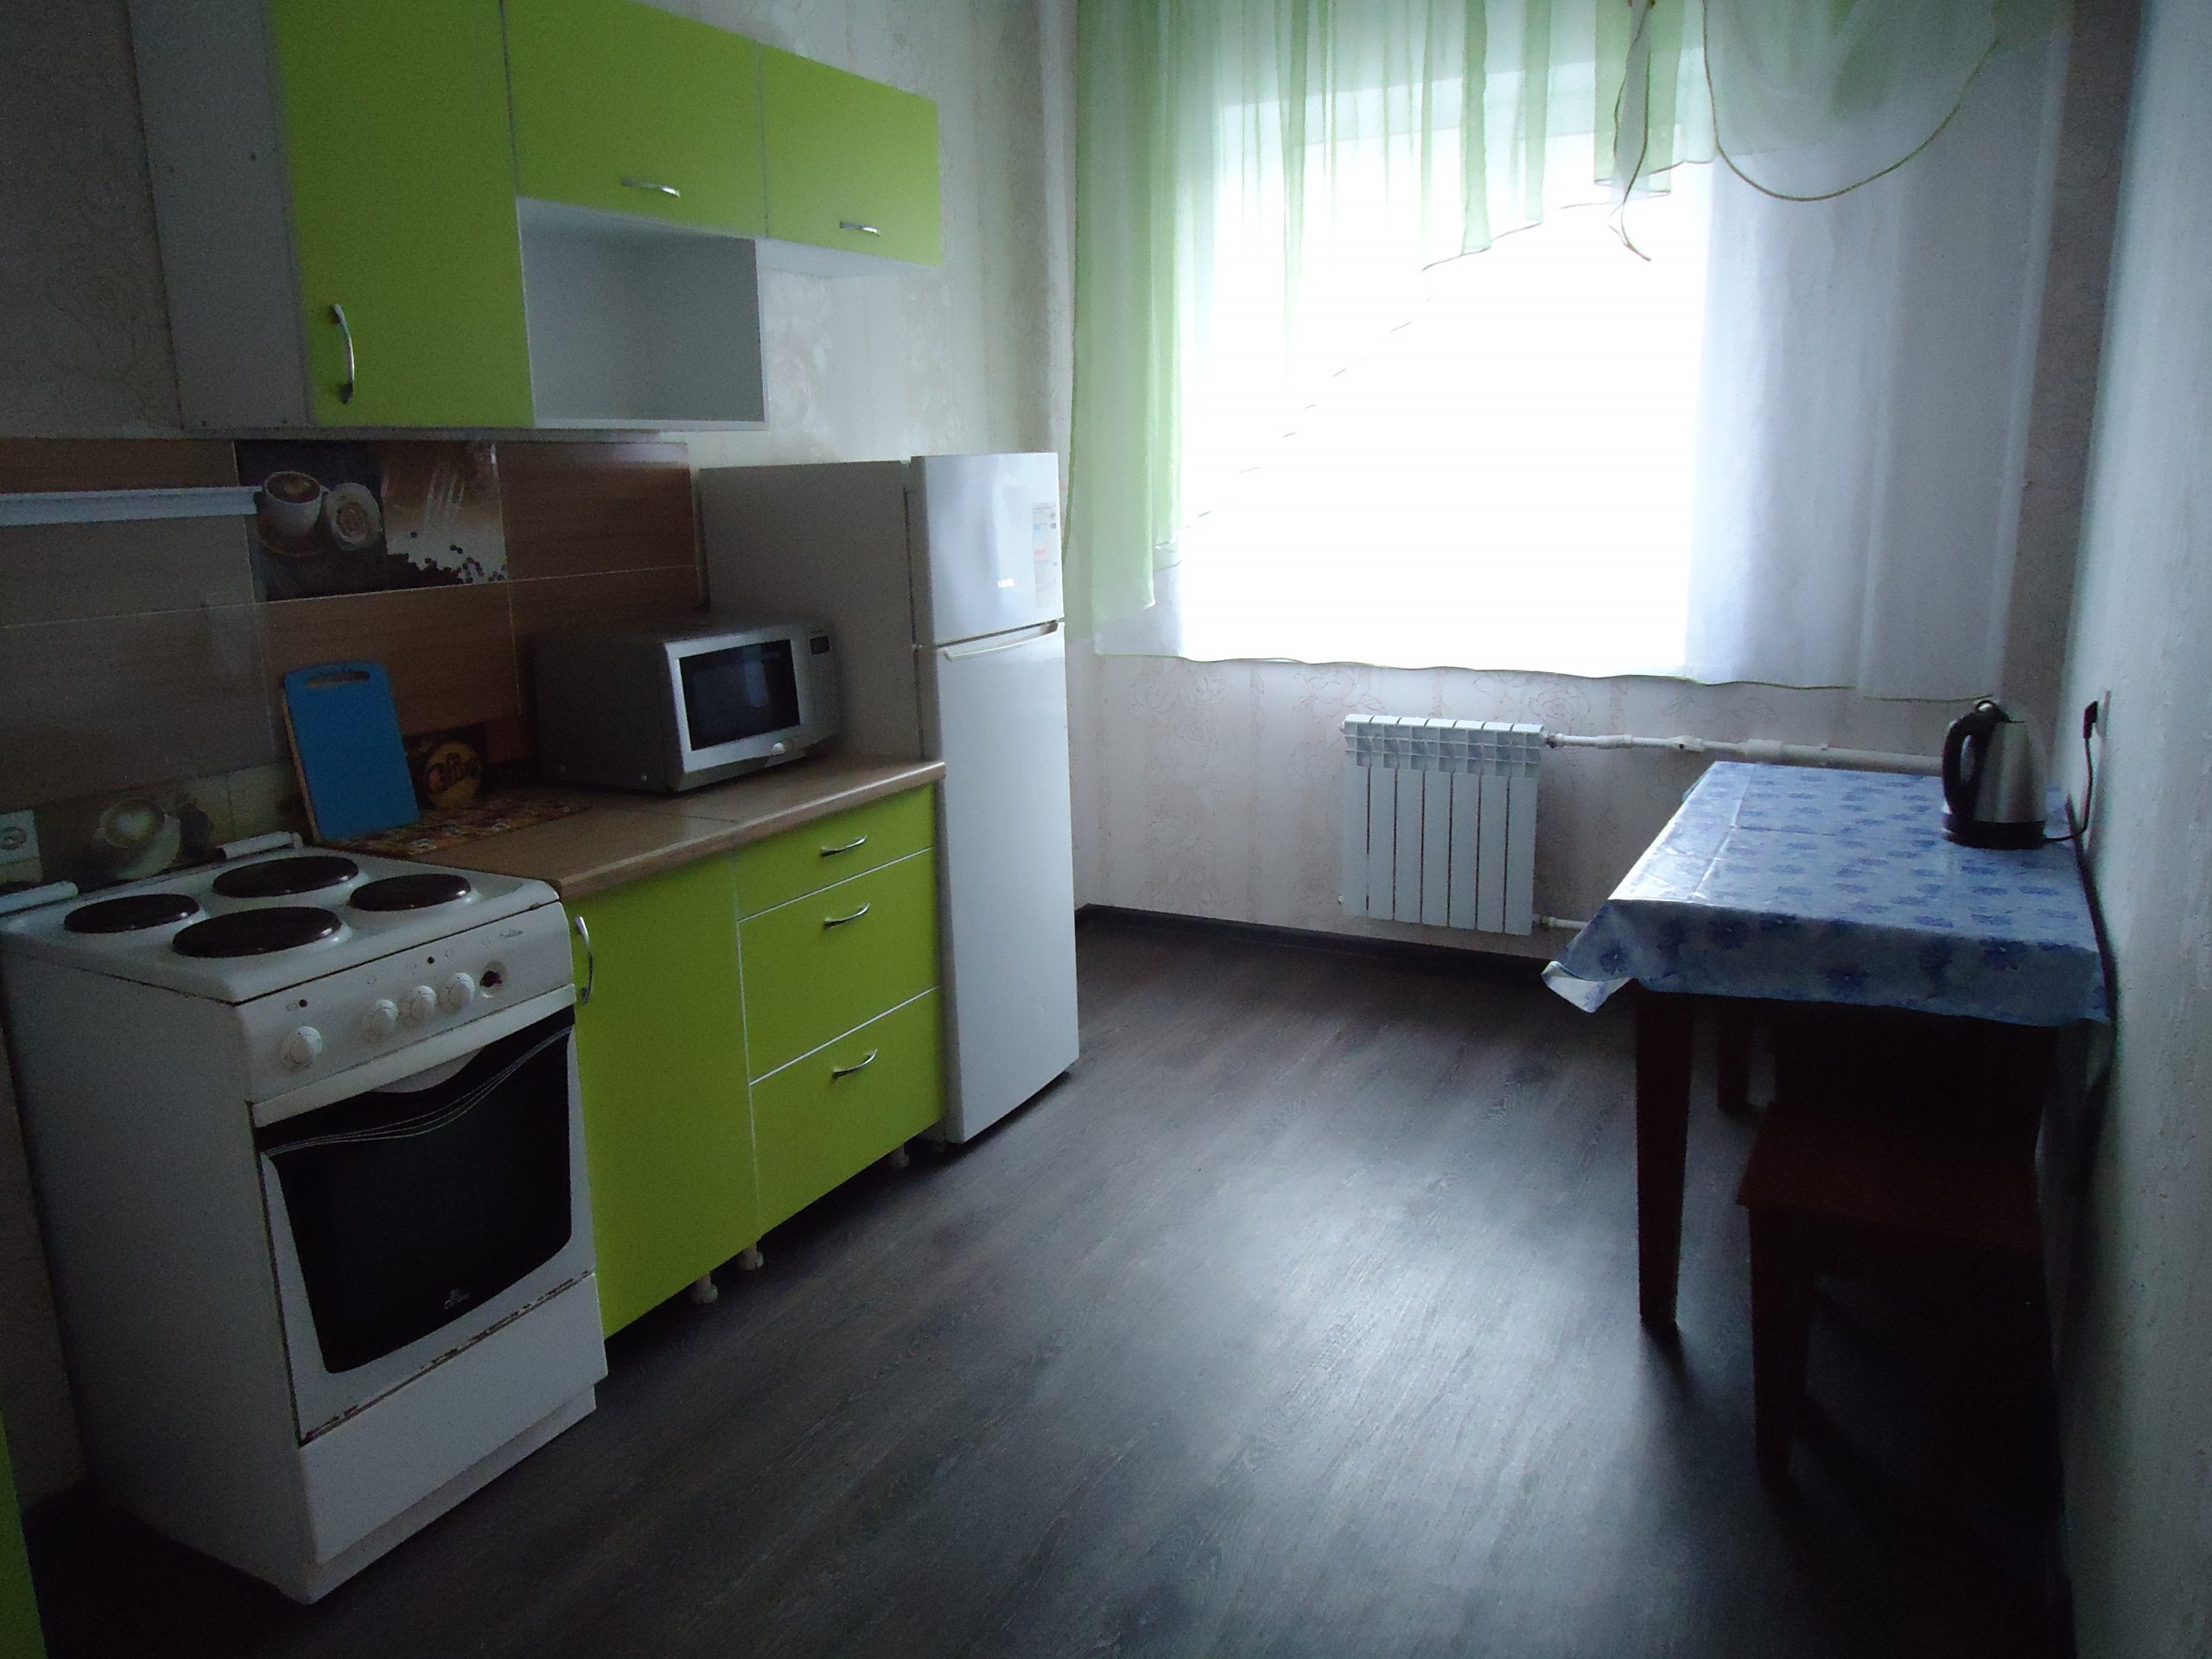 Двухкомнатная квартира на ул. Осипенко 31 (52кв.м)